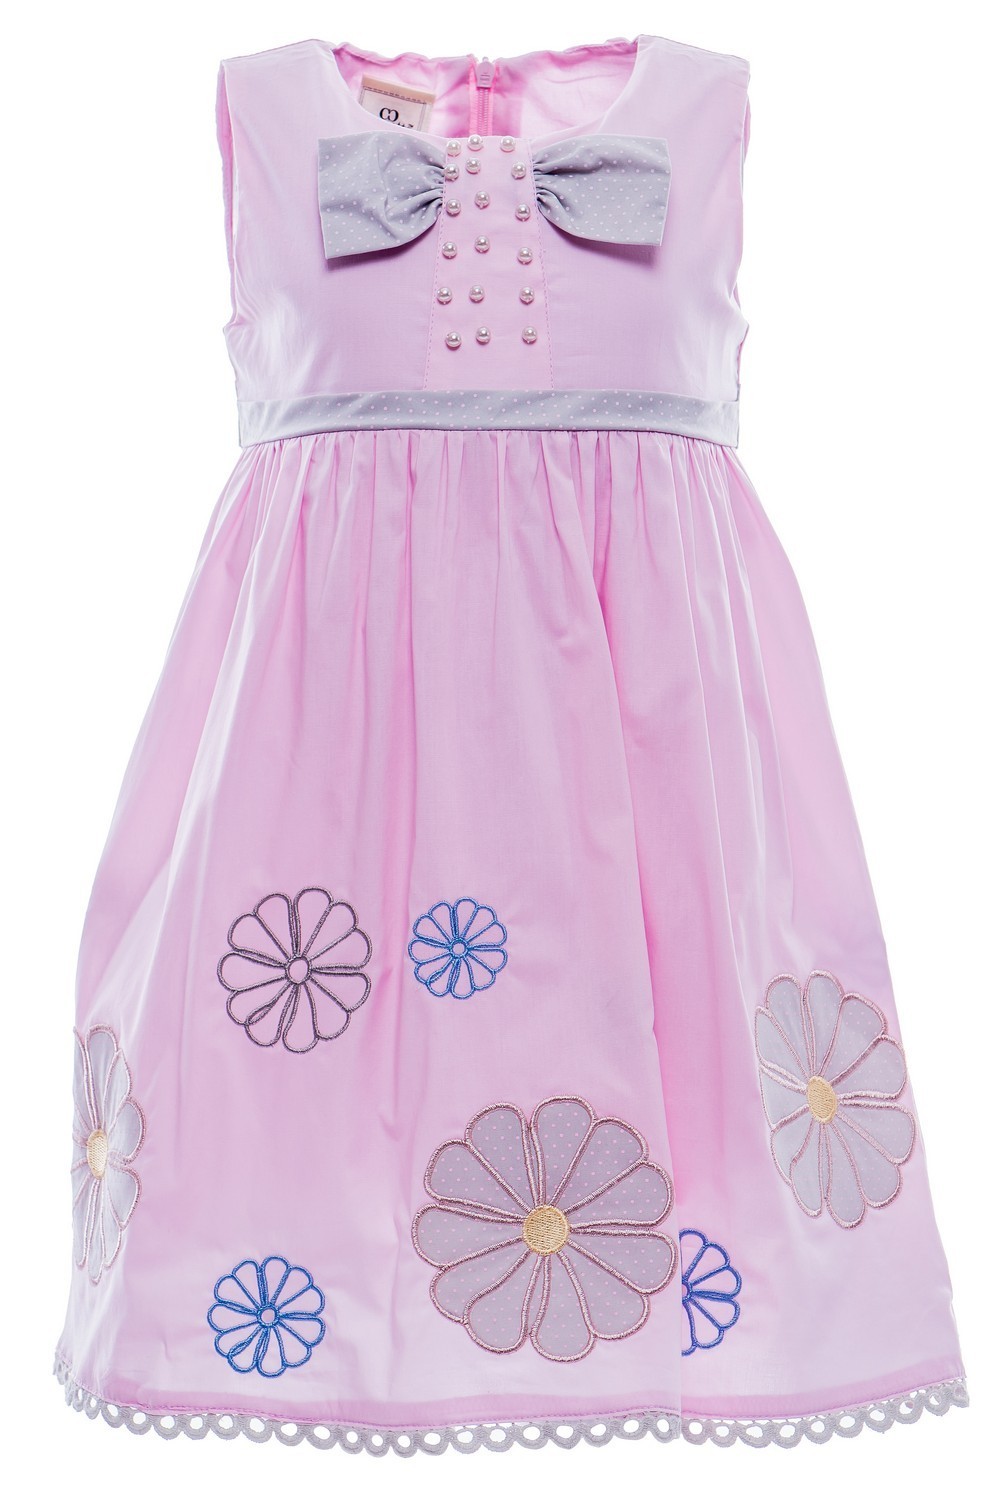 Купить Платье для девочки PL65 розовый